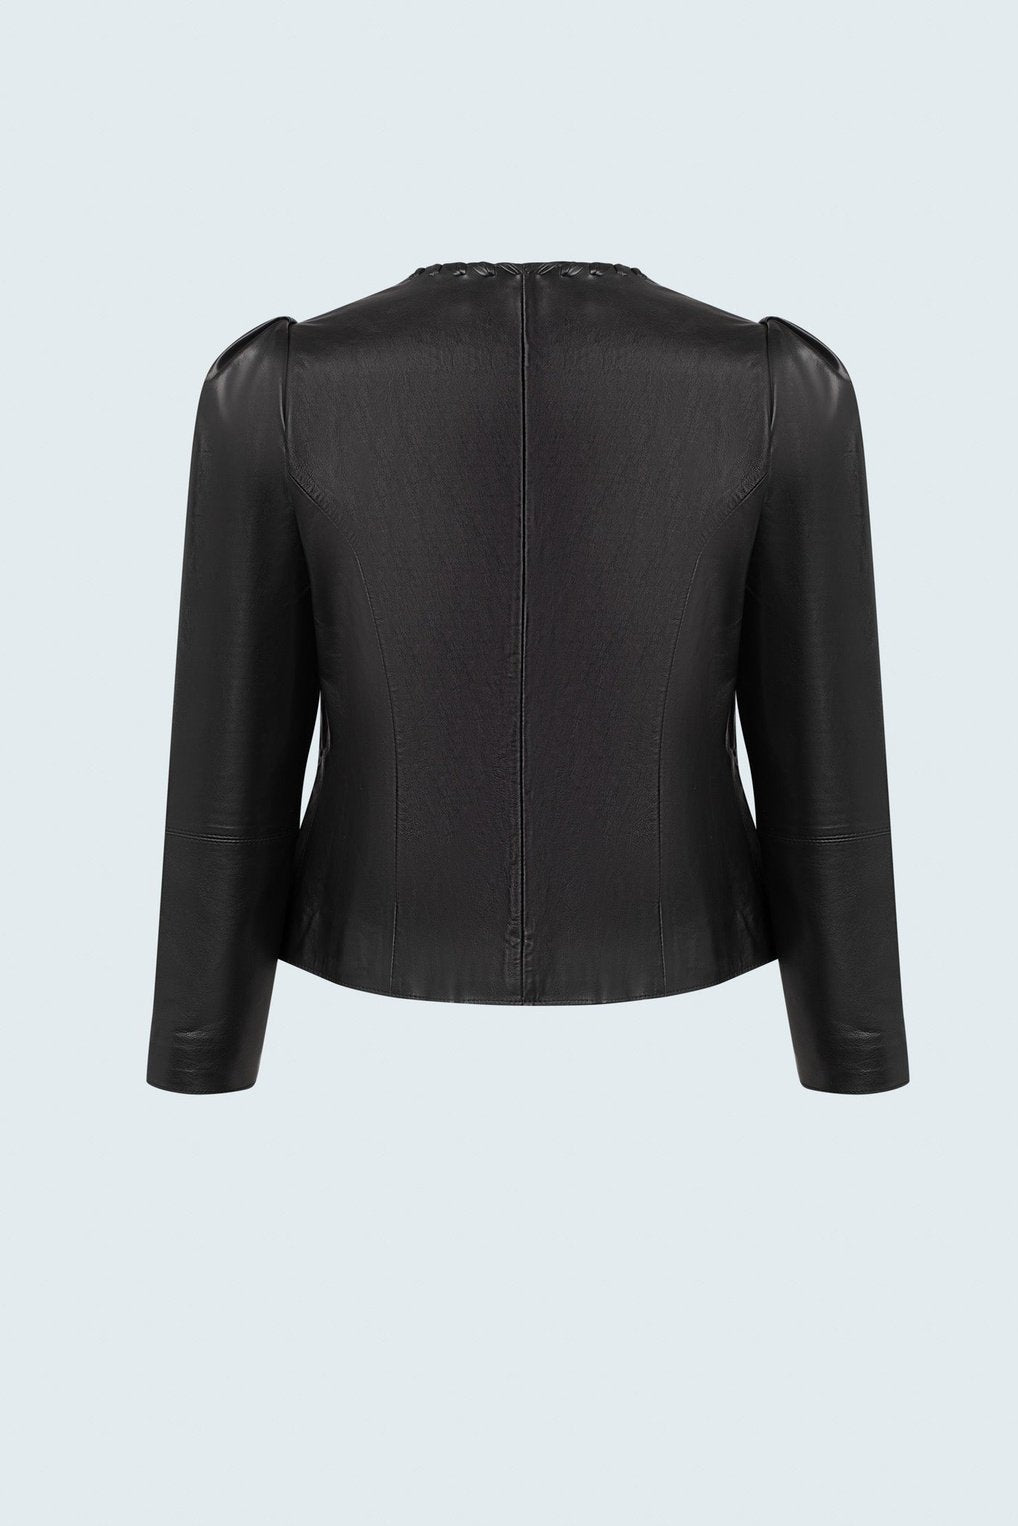 Iris Setlakwe Cropped Leather Jacket